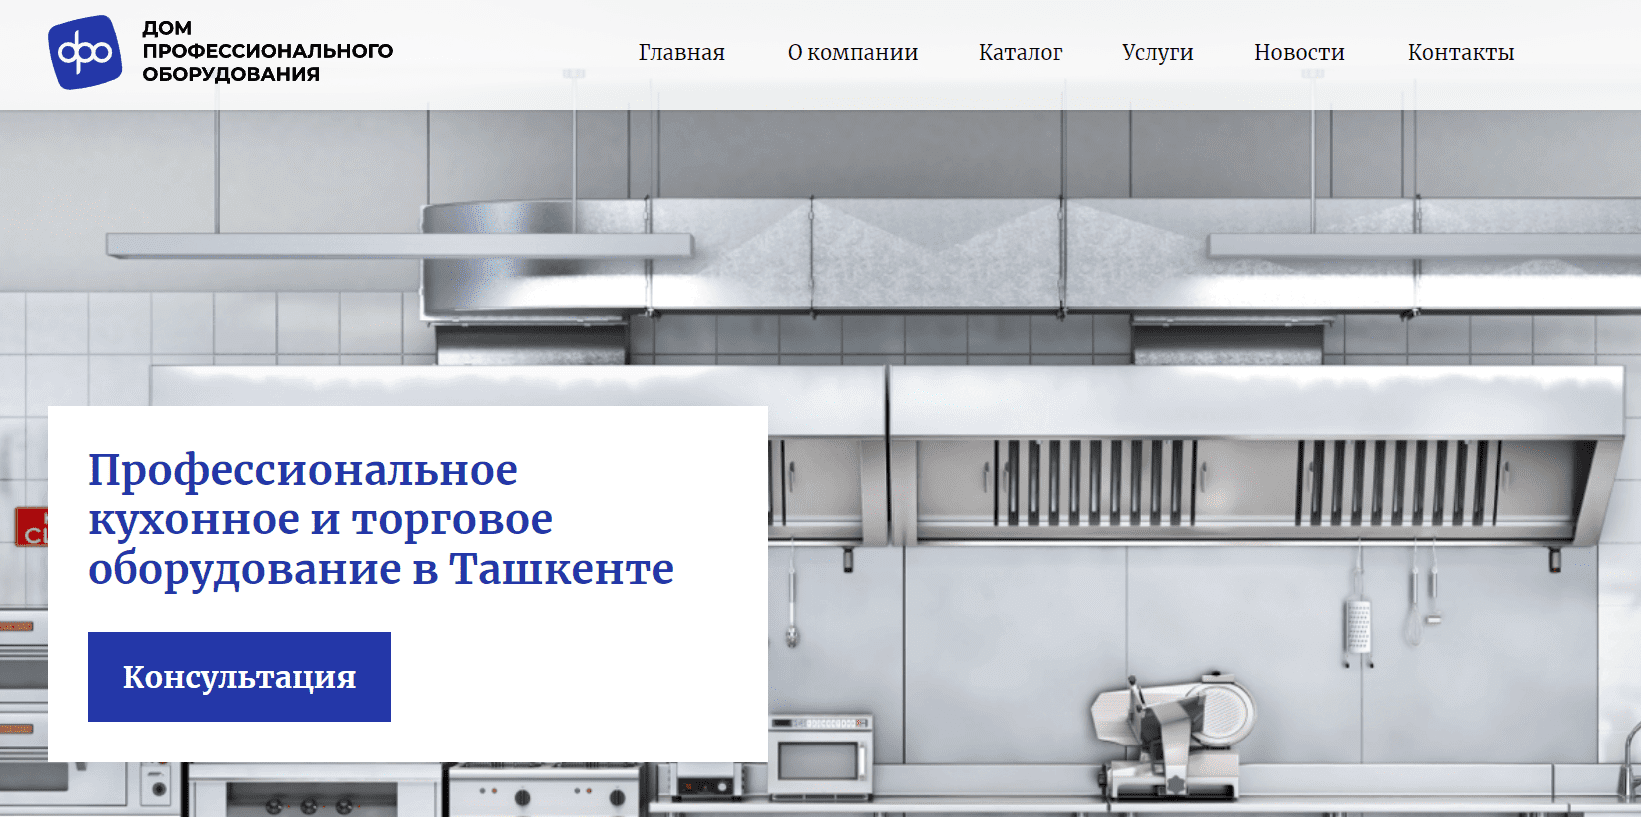 Дом оборудования (dpo.uz) - официальный сайт